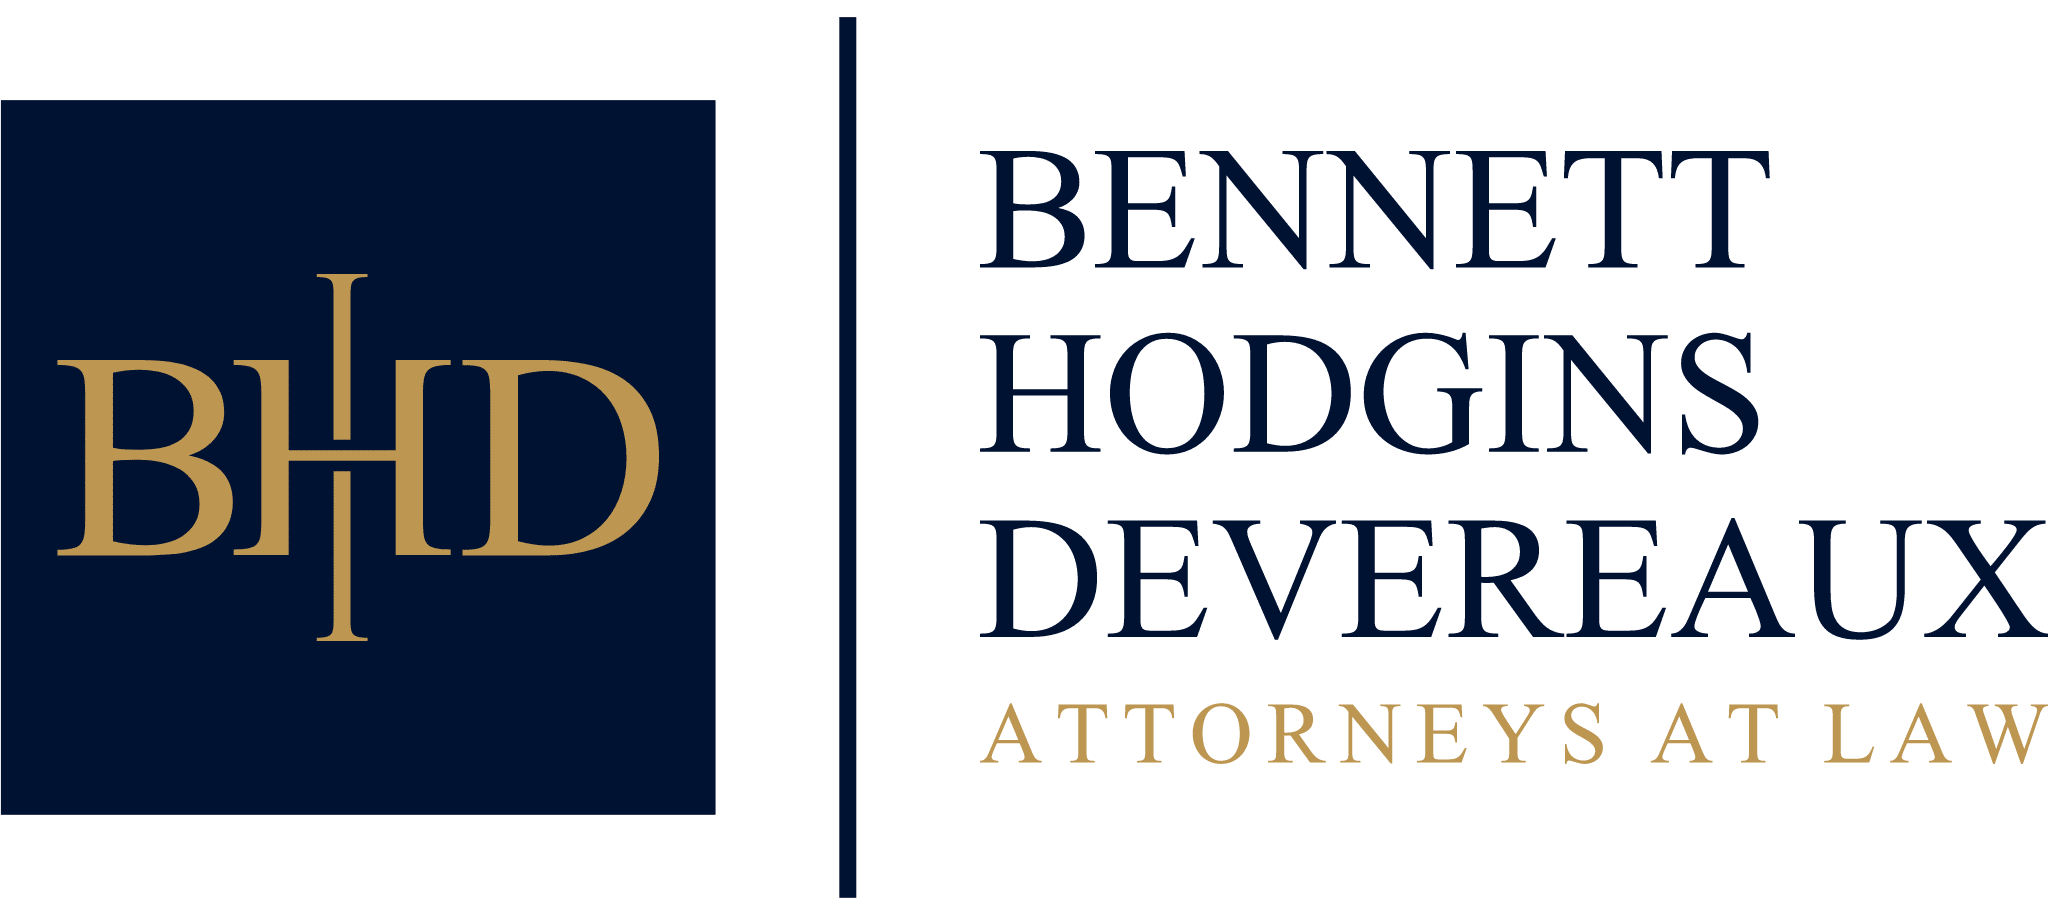 BHD Bennett Hodgins Devereaux Attorneys At Law